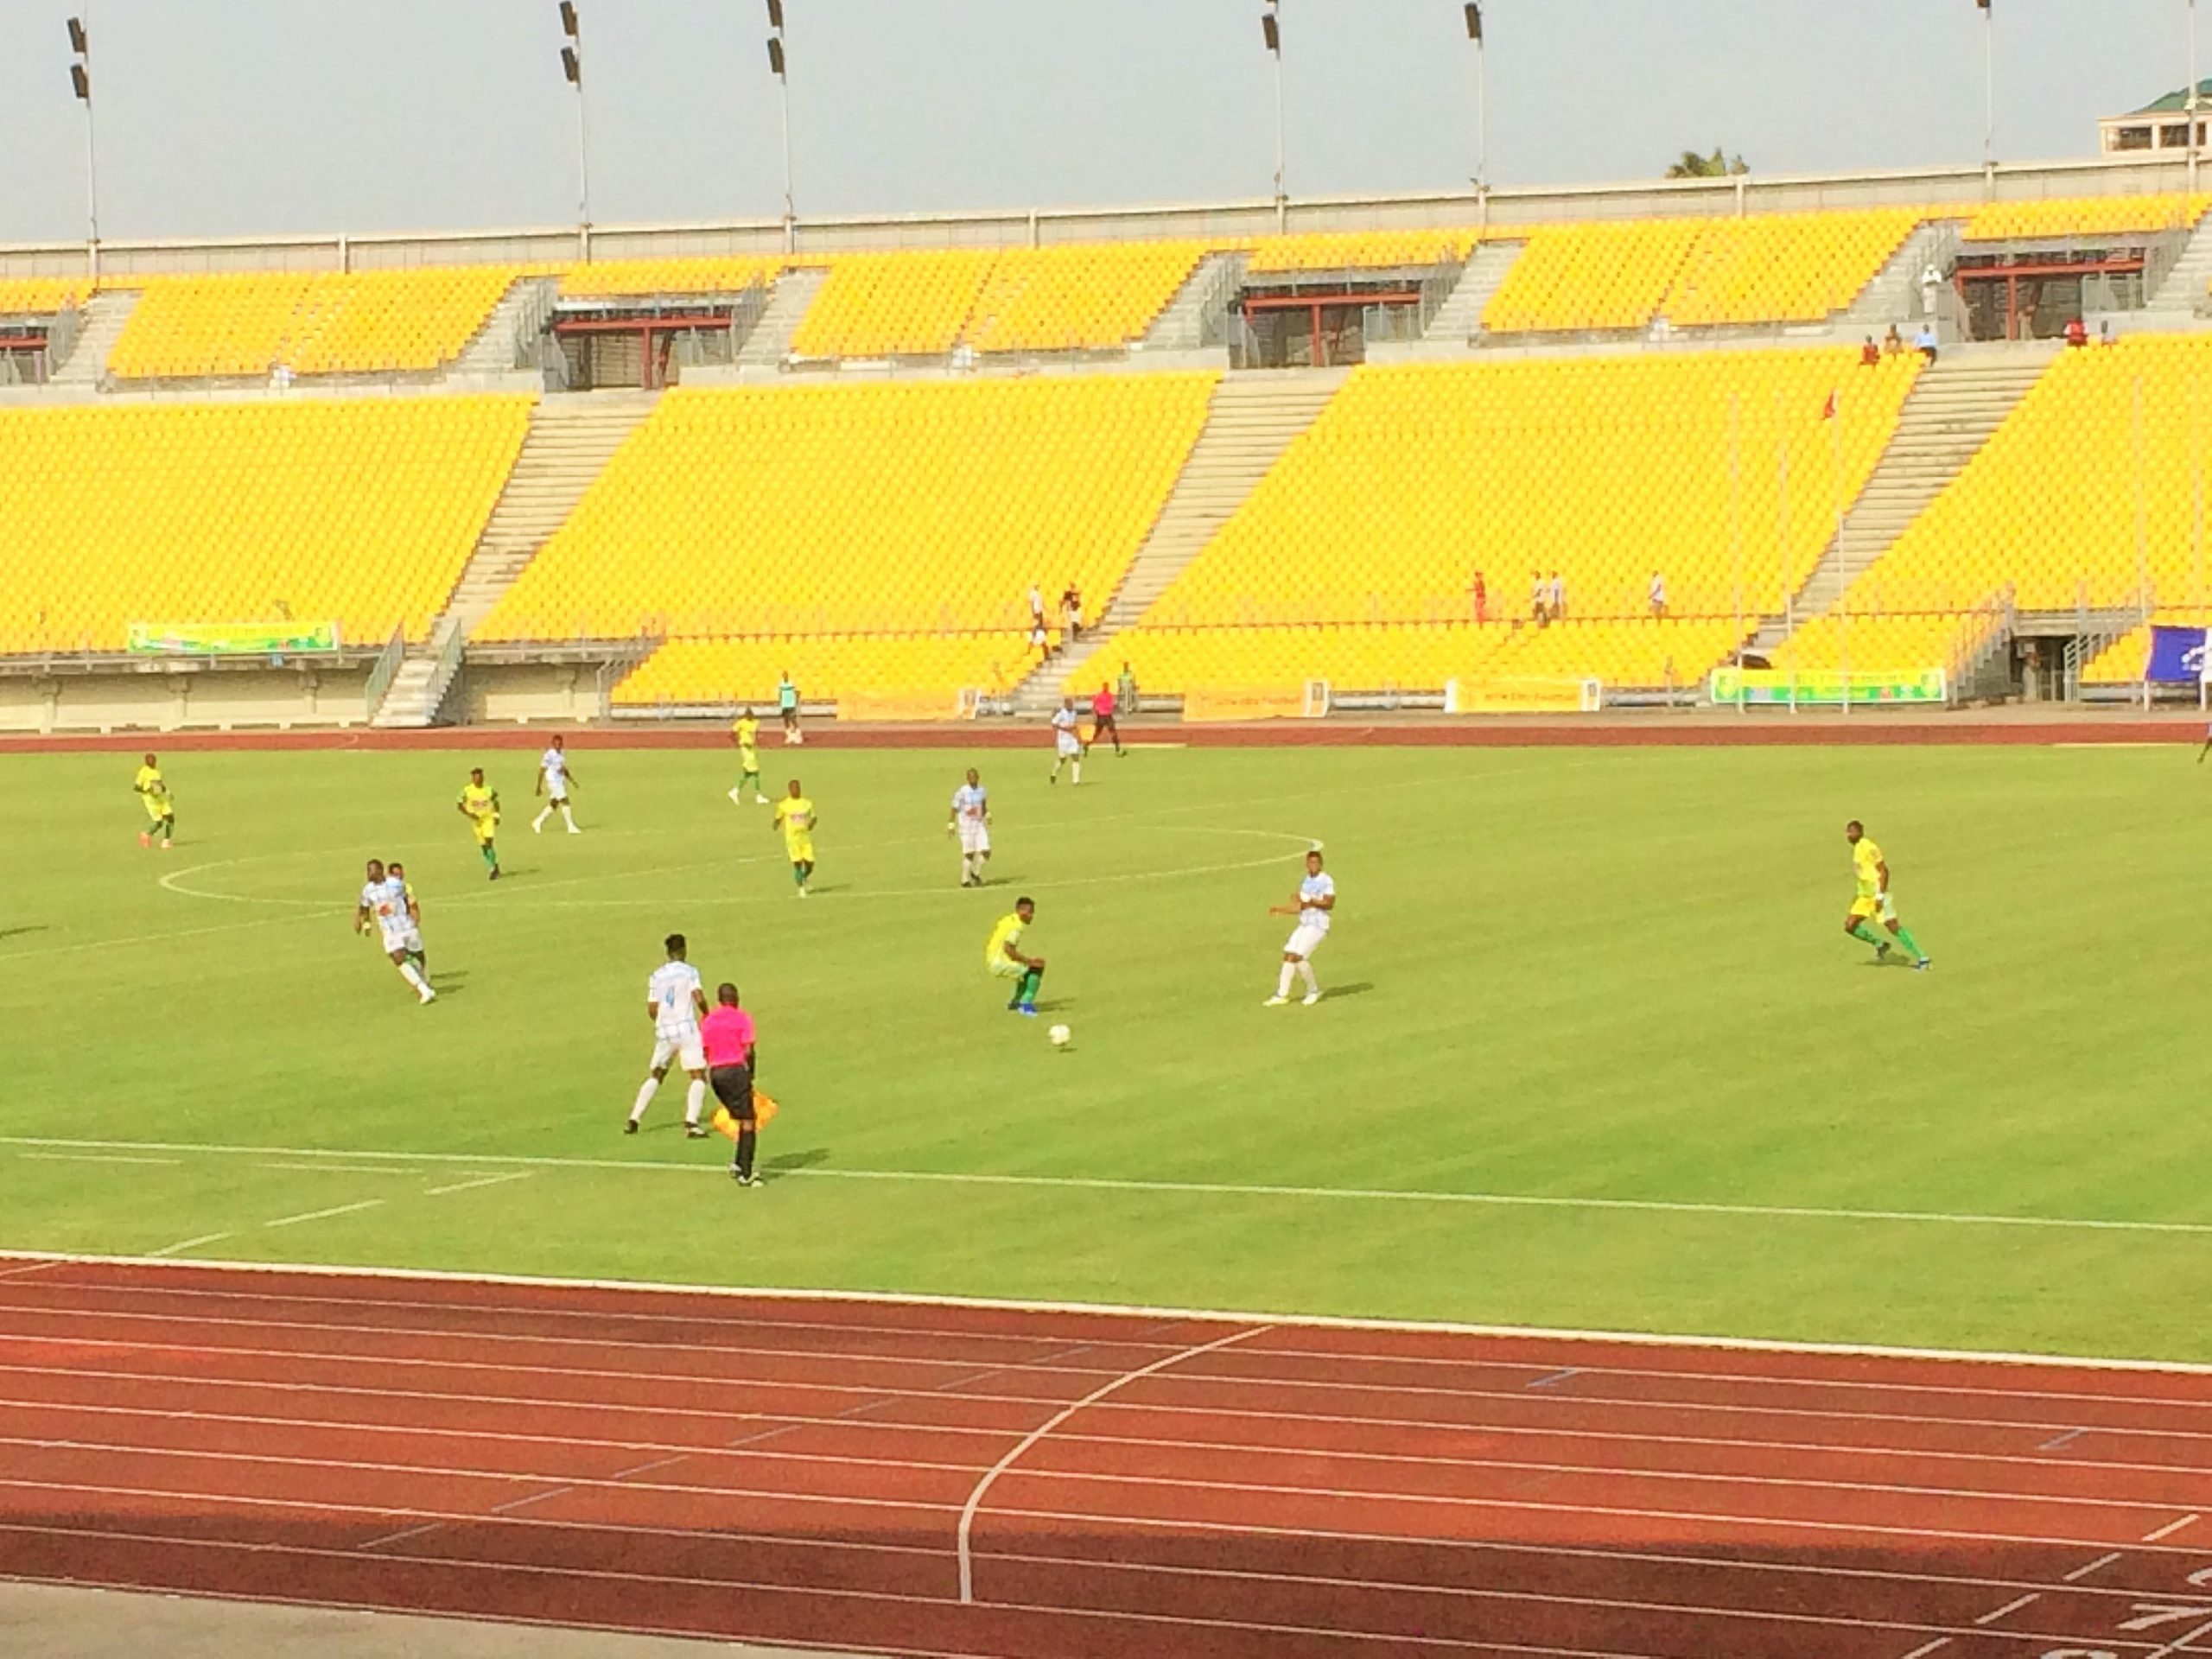 Une phase de jeu entre Les Astres de Douala et Apejes de Mfou au stade de la Réunification de Bépanda.